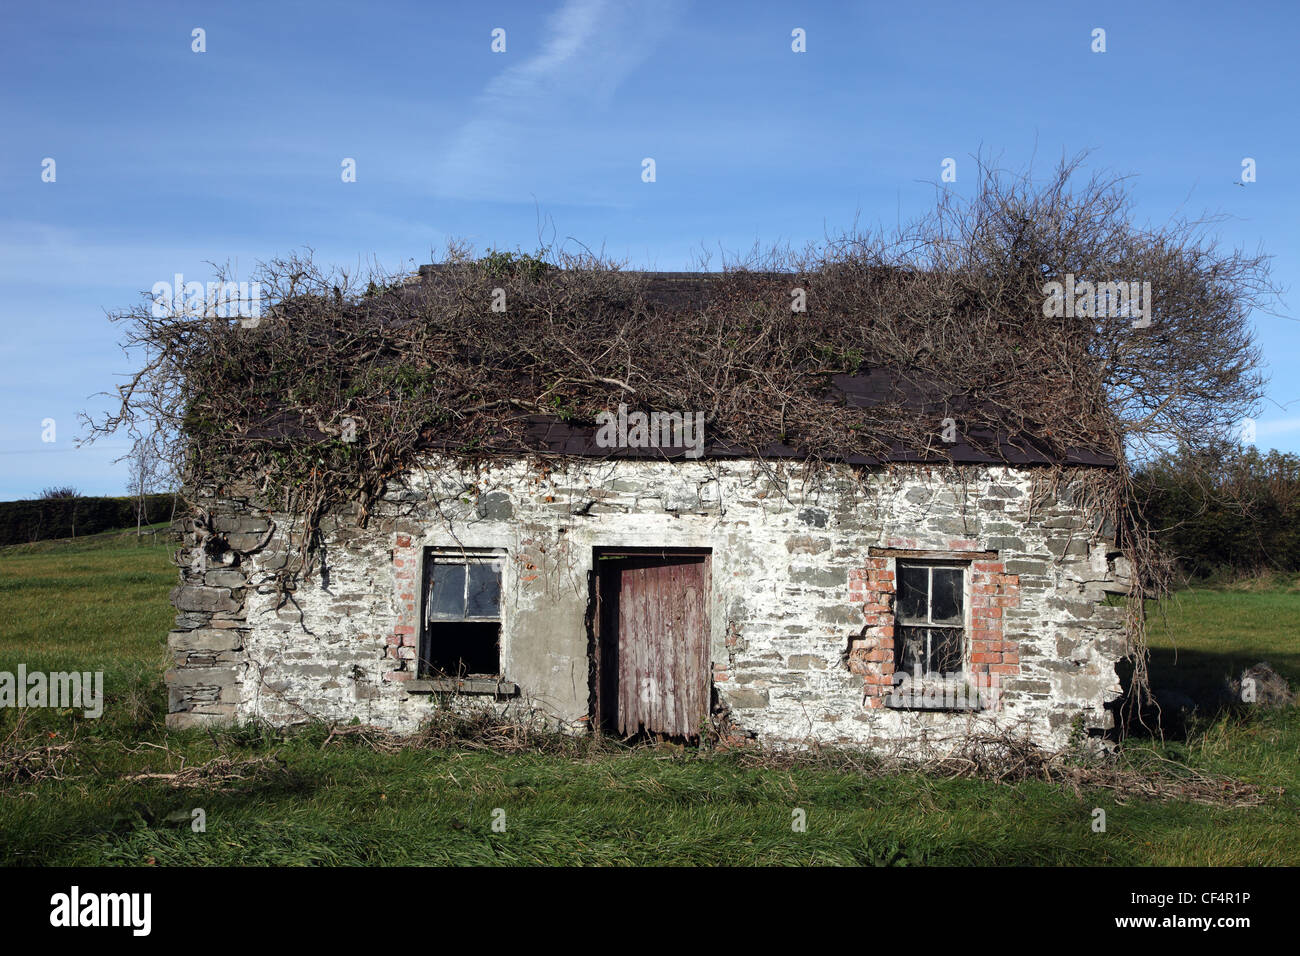 Chalet à l'abandon, typique de fermes abandonnées durant la Grande famine au 19e siècle. Banque D'Images